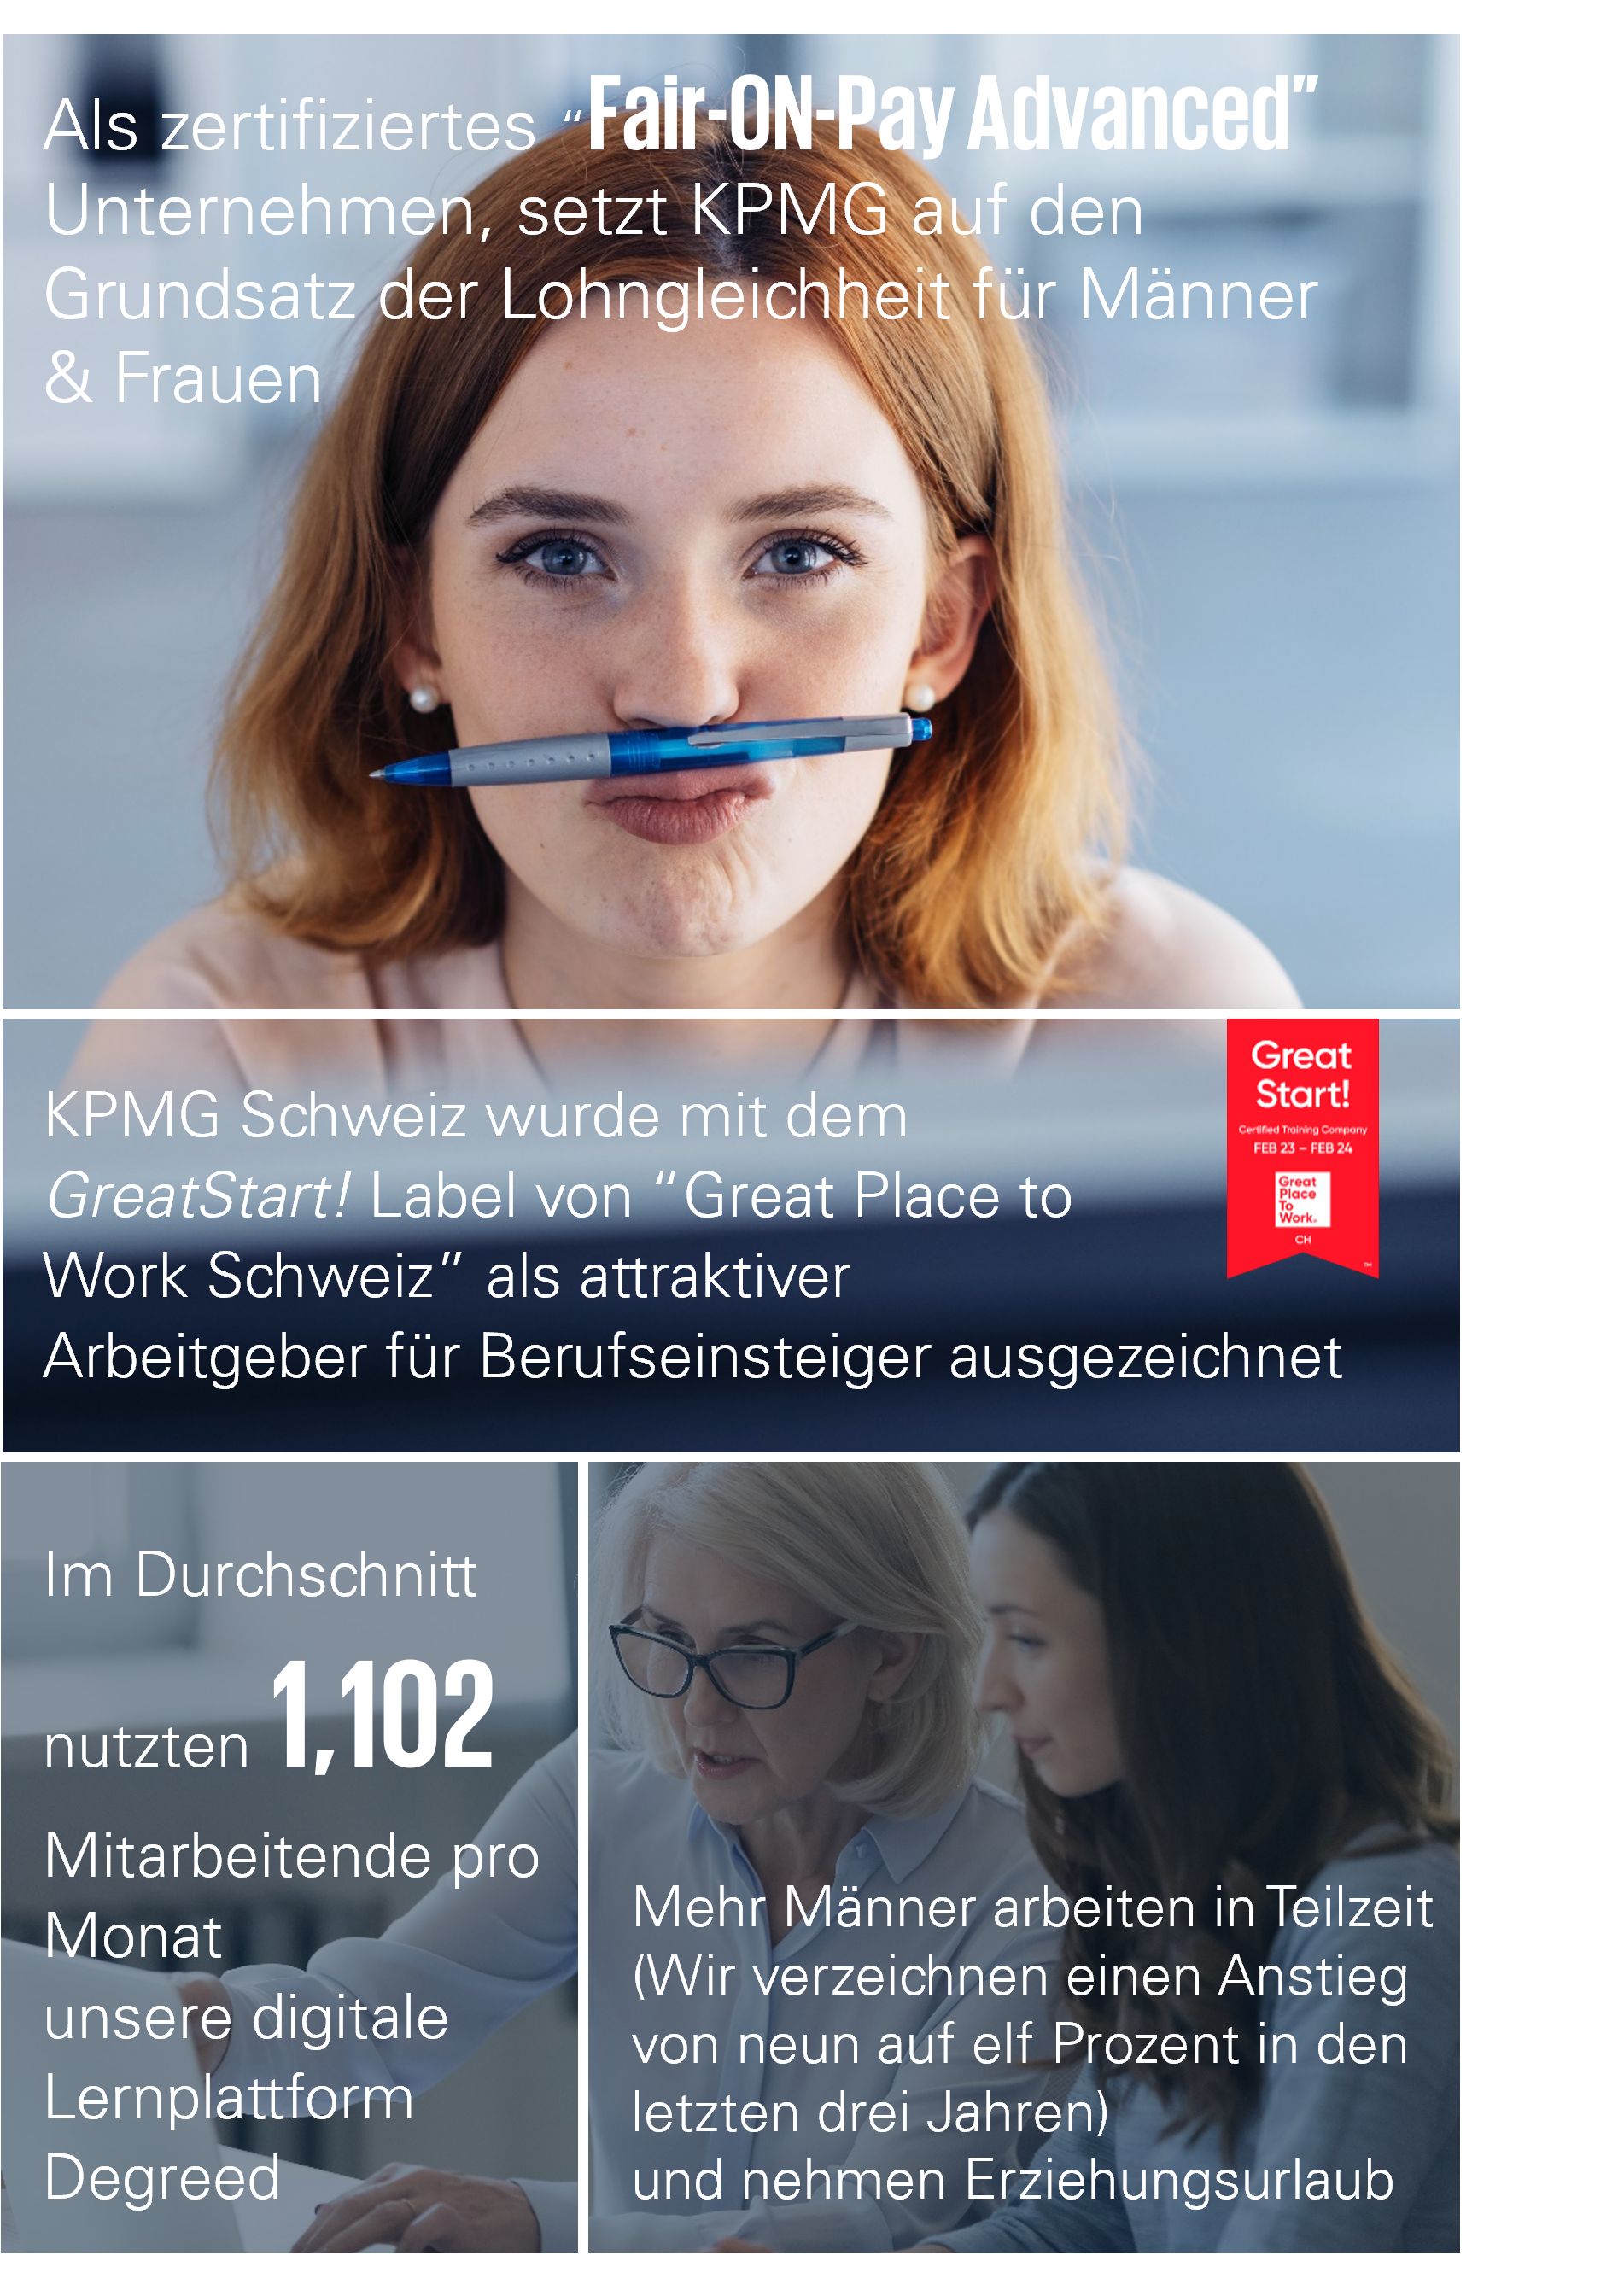 KPMG Switzerland Impact Plan 2023 - "our people"